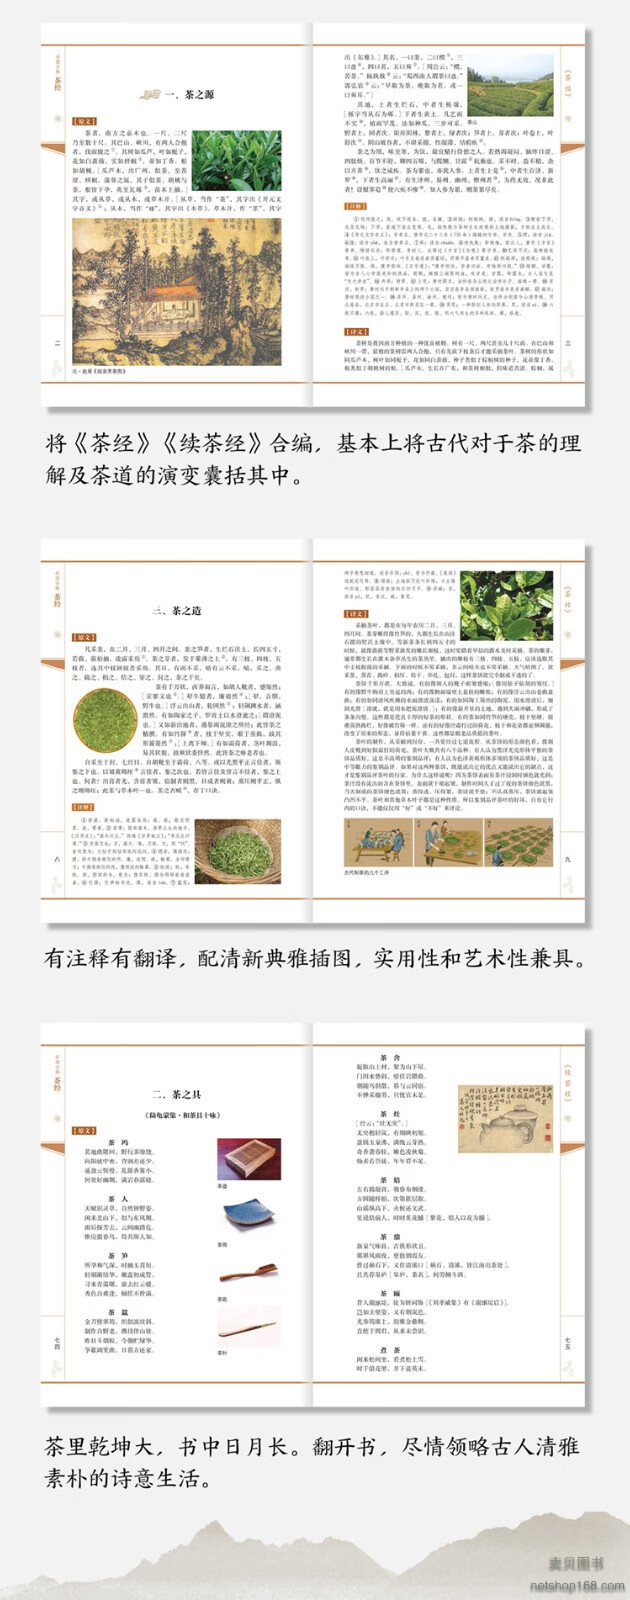 《彩图全解茶经 书为茶文化通俗读物，是一部关于茶叶生产的历史、源流、现状、生产技术以及饮茶技艺、茶道原理的综合性论著》